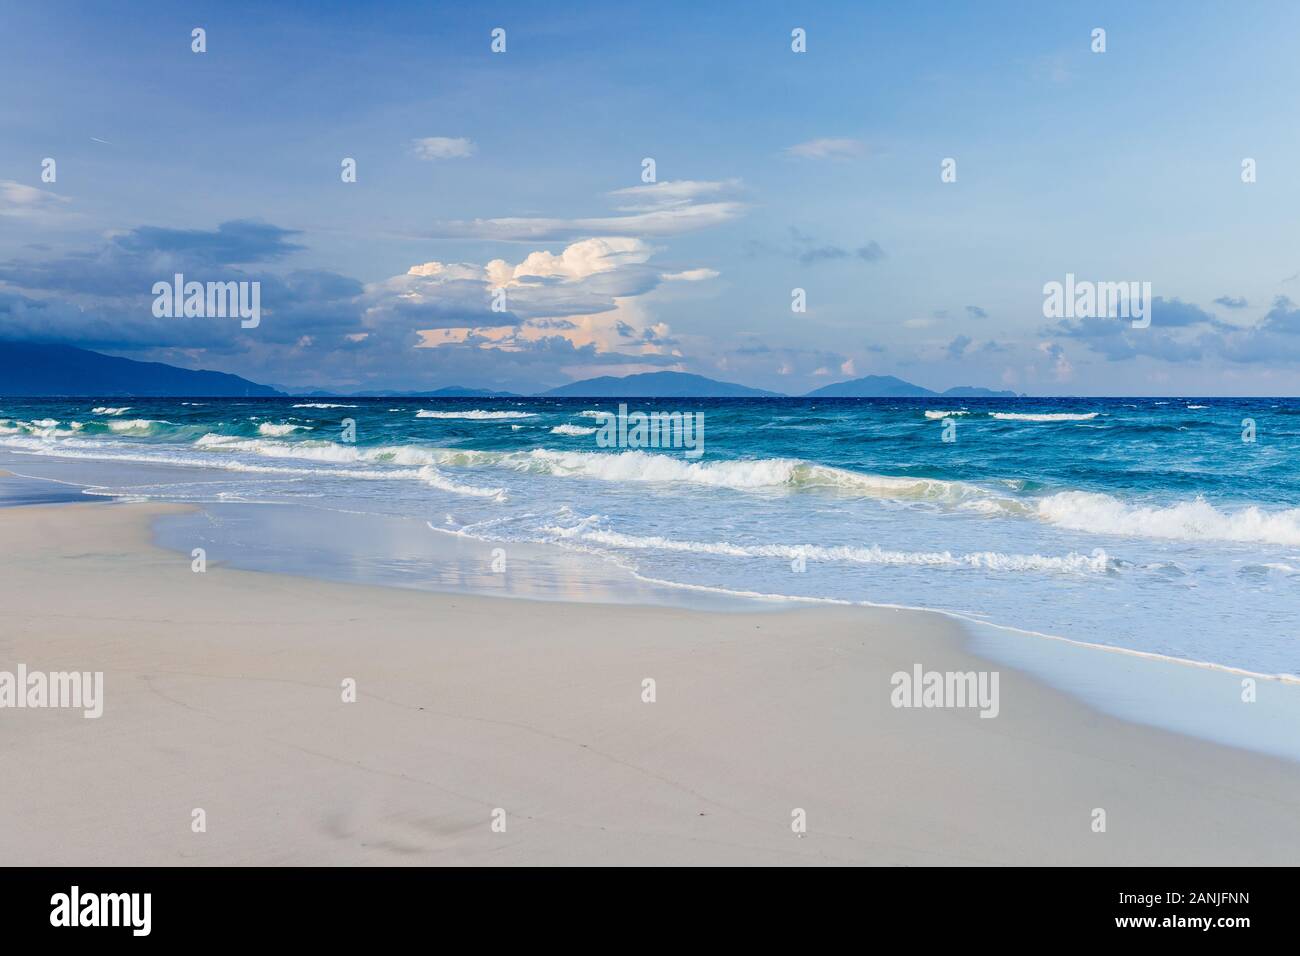 Hermosa, vacía, la playa de arena blanca tropical pequeñas olas en el mar de fondo. Skyline con el cielo azul y las nubes blancas, Asia Foto de stock